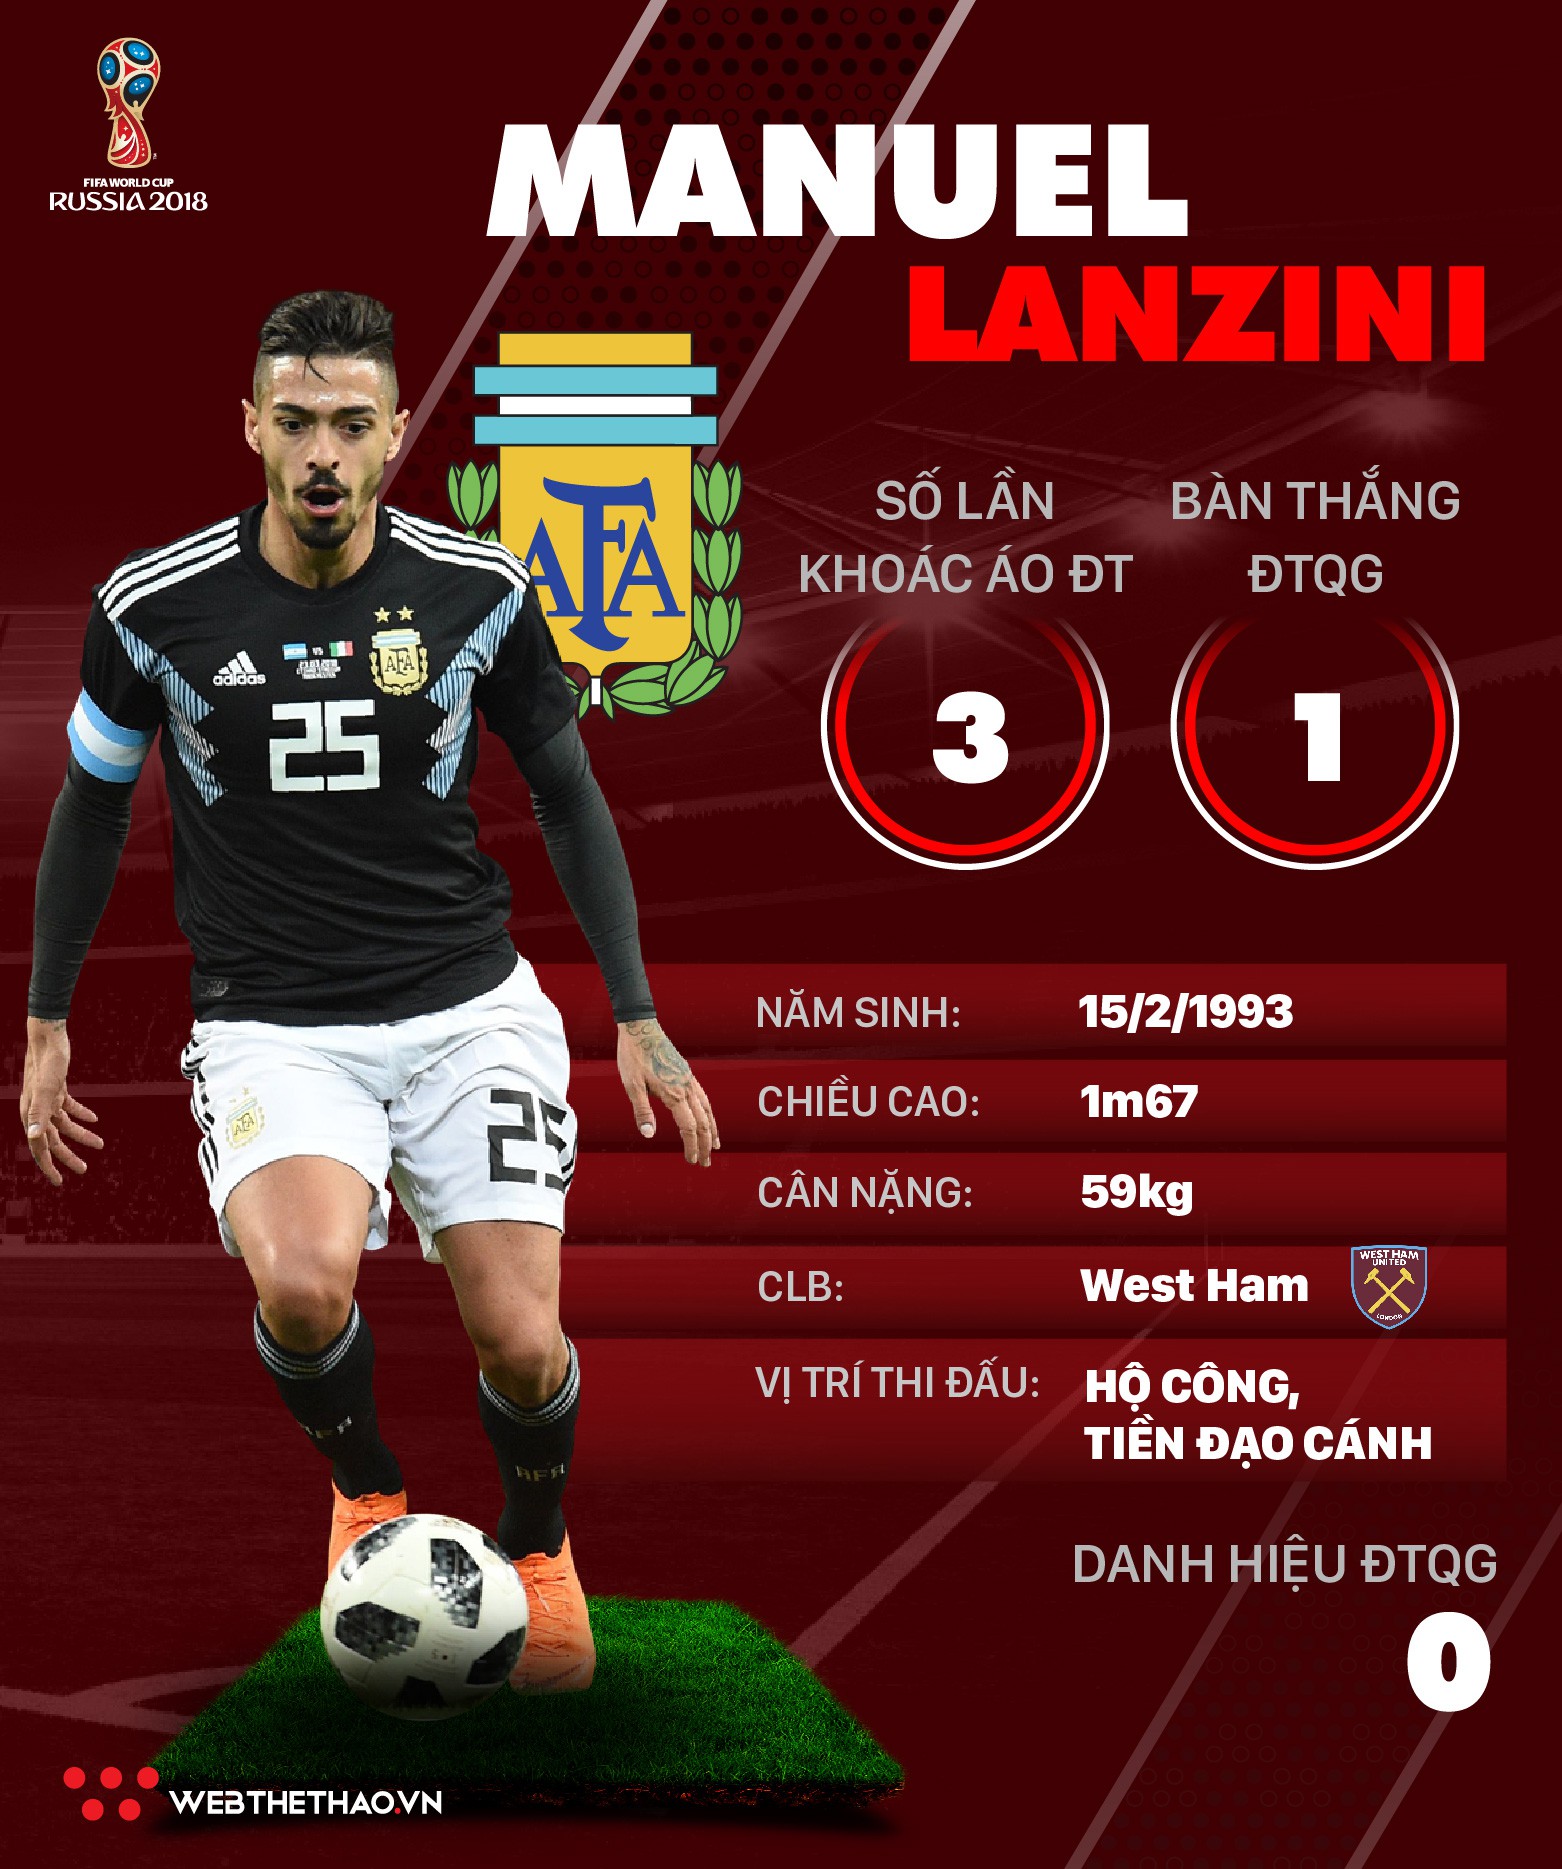 Thông tin cầu thủ Manuel Lanzini của ĐT Argentina dự World Cup 2018 - Ảnh 1.